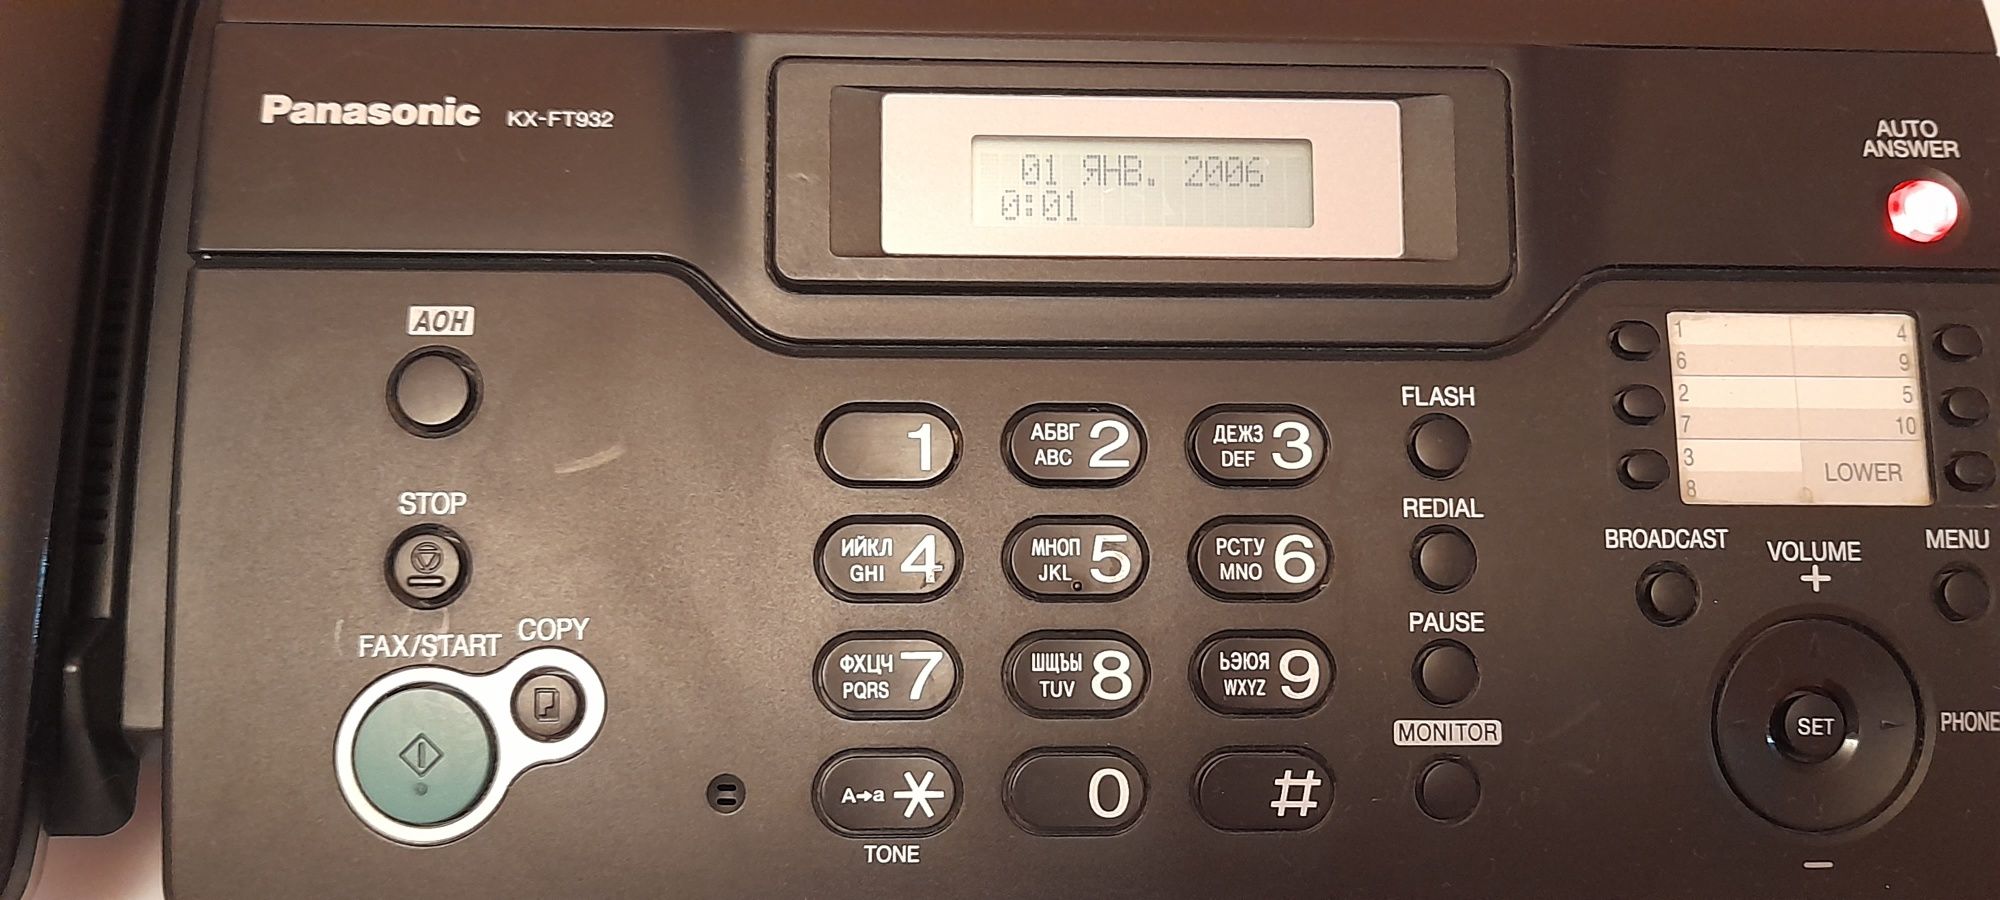 Продам телефон-факс Panasonic. В очень хорошем состоянии. За 13000-тг